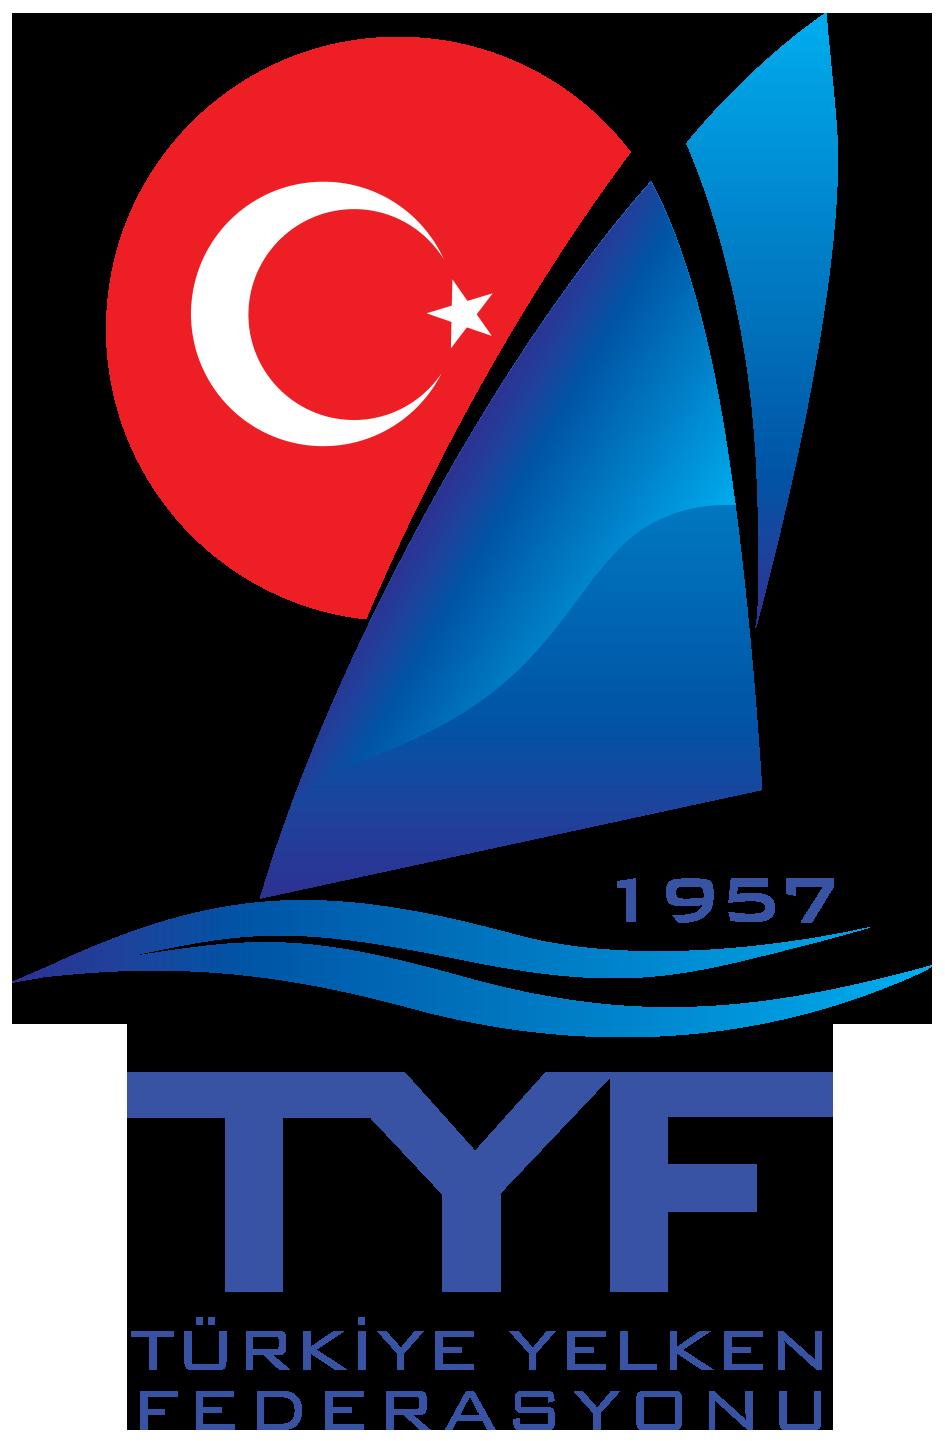 Kulübü, Karamürsel Alp Yelken Kulübü, Pendik Yelken Kulübü, Marmara Yelken Kulübü ve Suadiye Yelken Kulübü tarafından organize